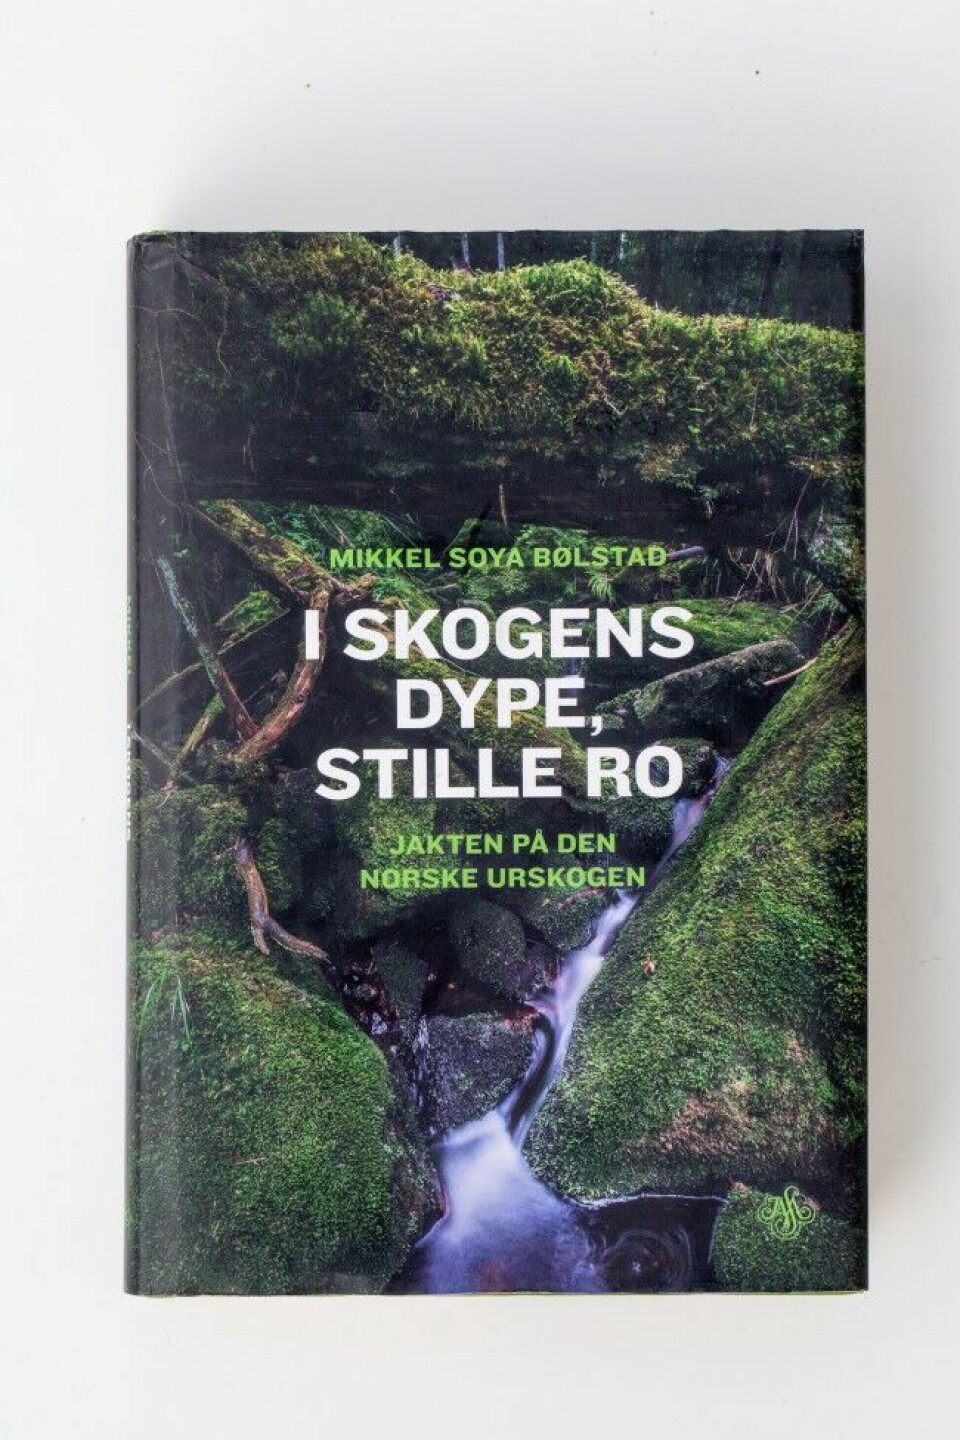 Biolog Mikkel Soya Bølstad har tatt for seg urskogens tilstand i Norge, og skriver om skogens økologi, artsmangfold, samt de motstridende oppfatningen om bruk og vern av skog.